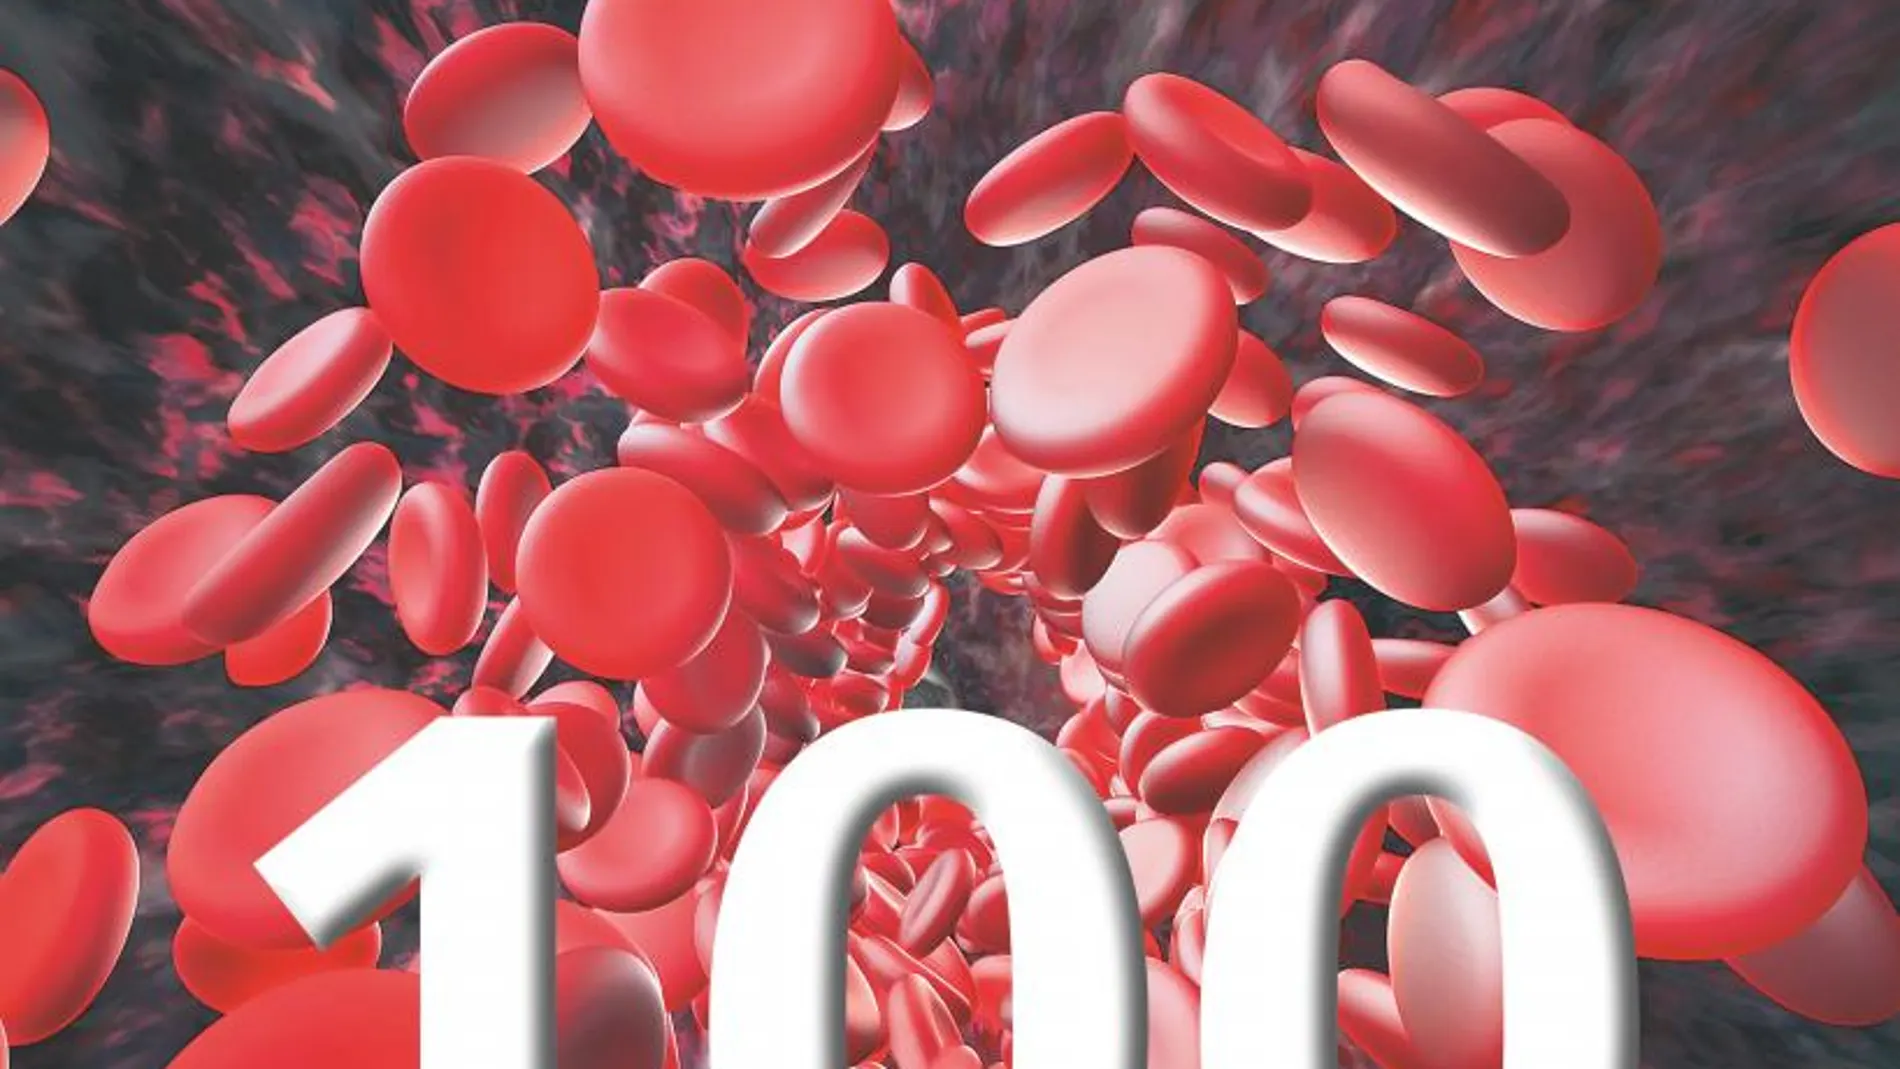 Heparina: El anticoagulante centenario salva 100 millones de vidas cada año